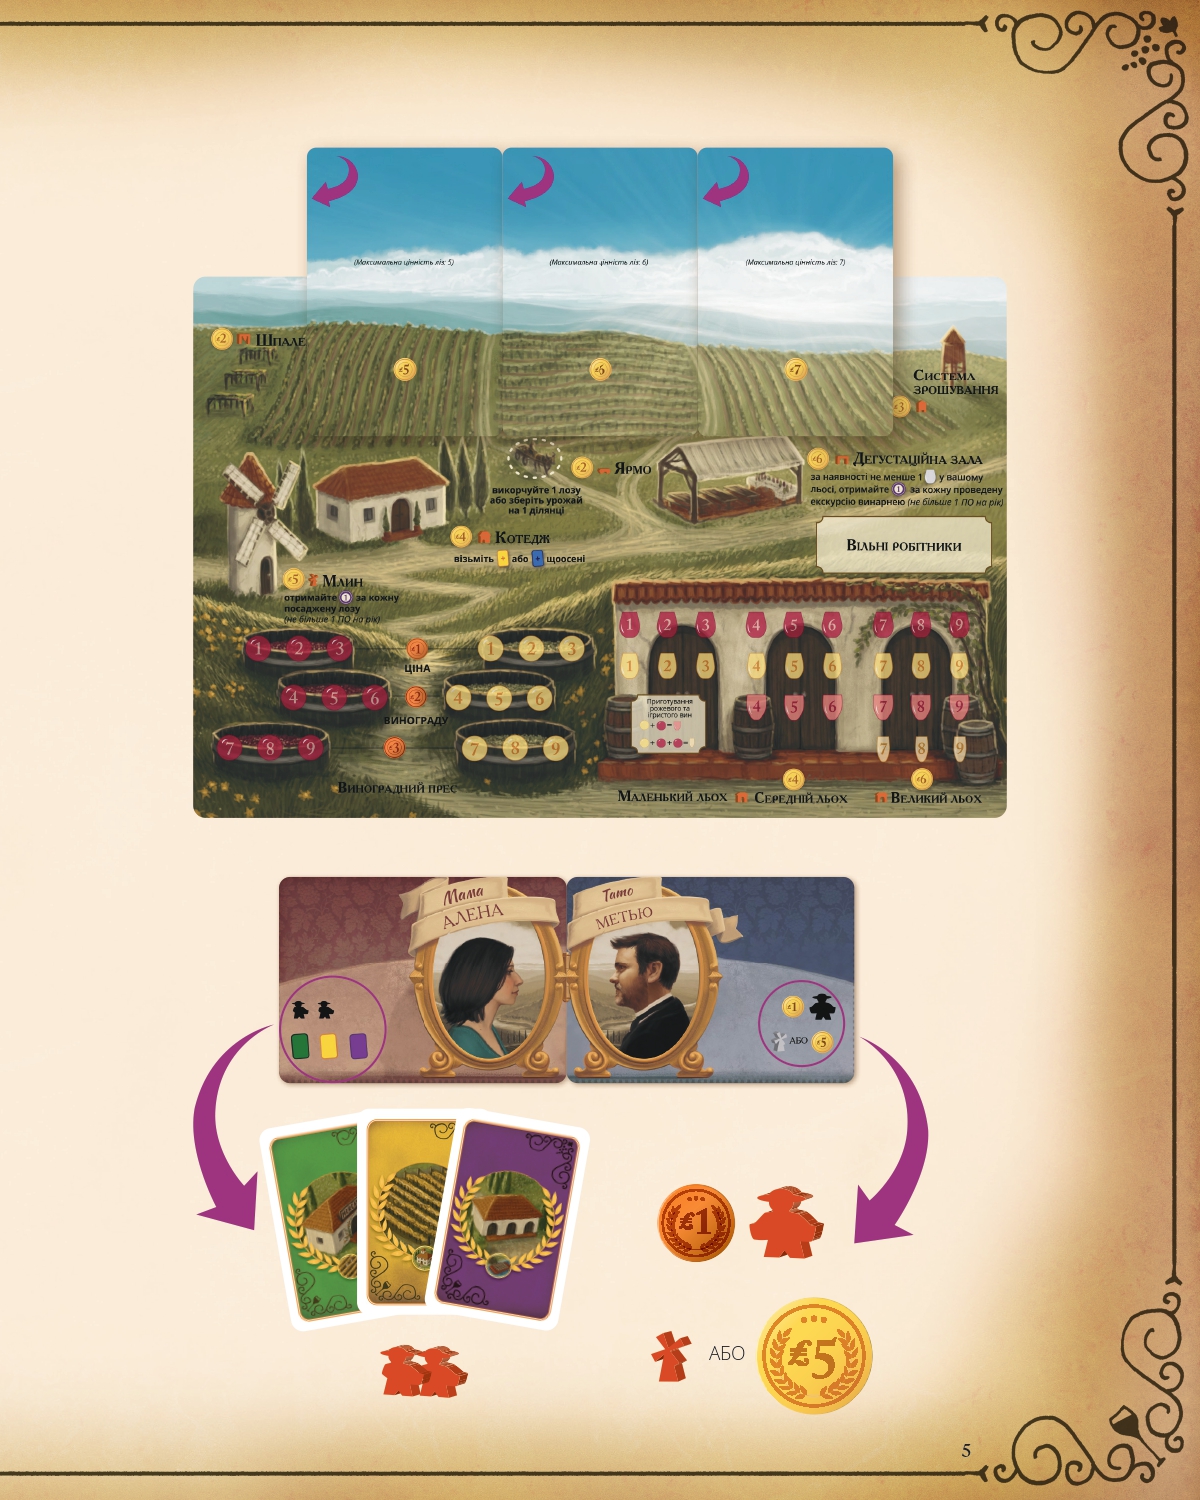 Виноделие (Viticulture Essential Edition) (UA) Kilogames - Настольная игра (KG-2250)